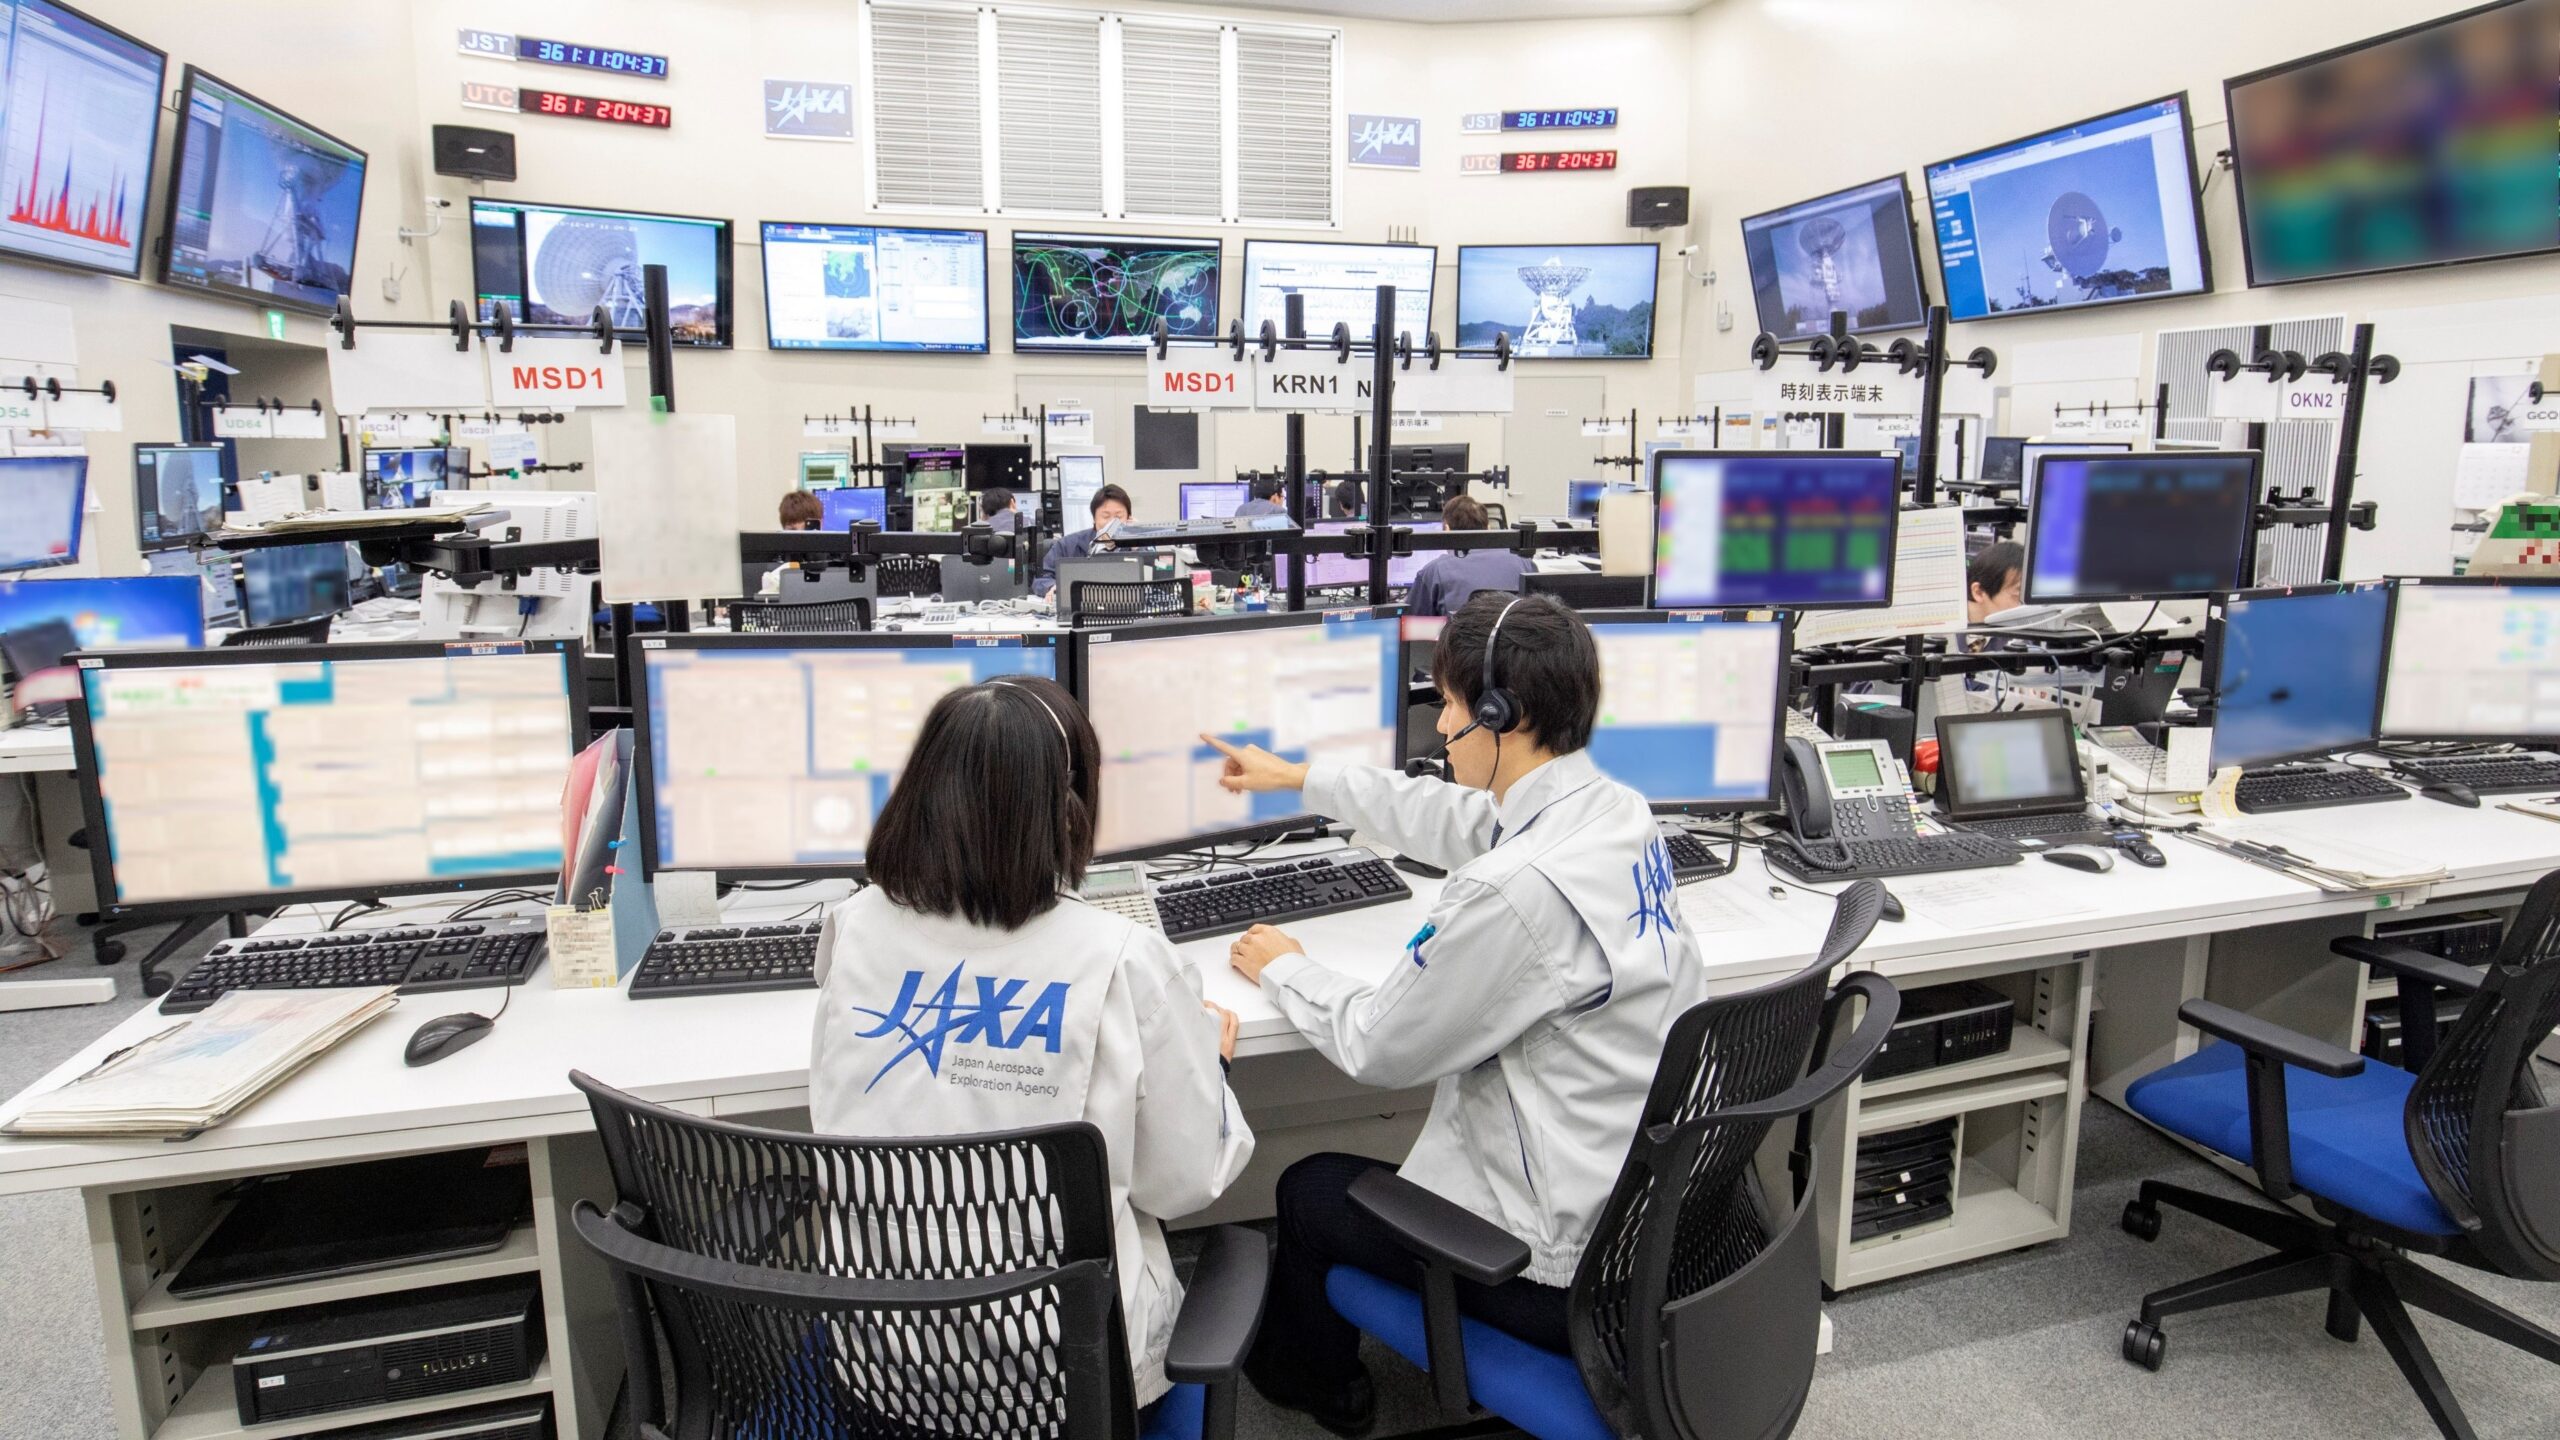 Centrum kontrolne JAXA z pracownikami przy wielu monitorach i sprzęcie komunikacyjnym.